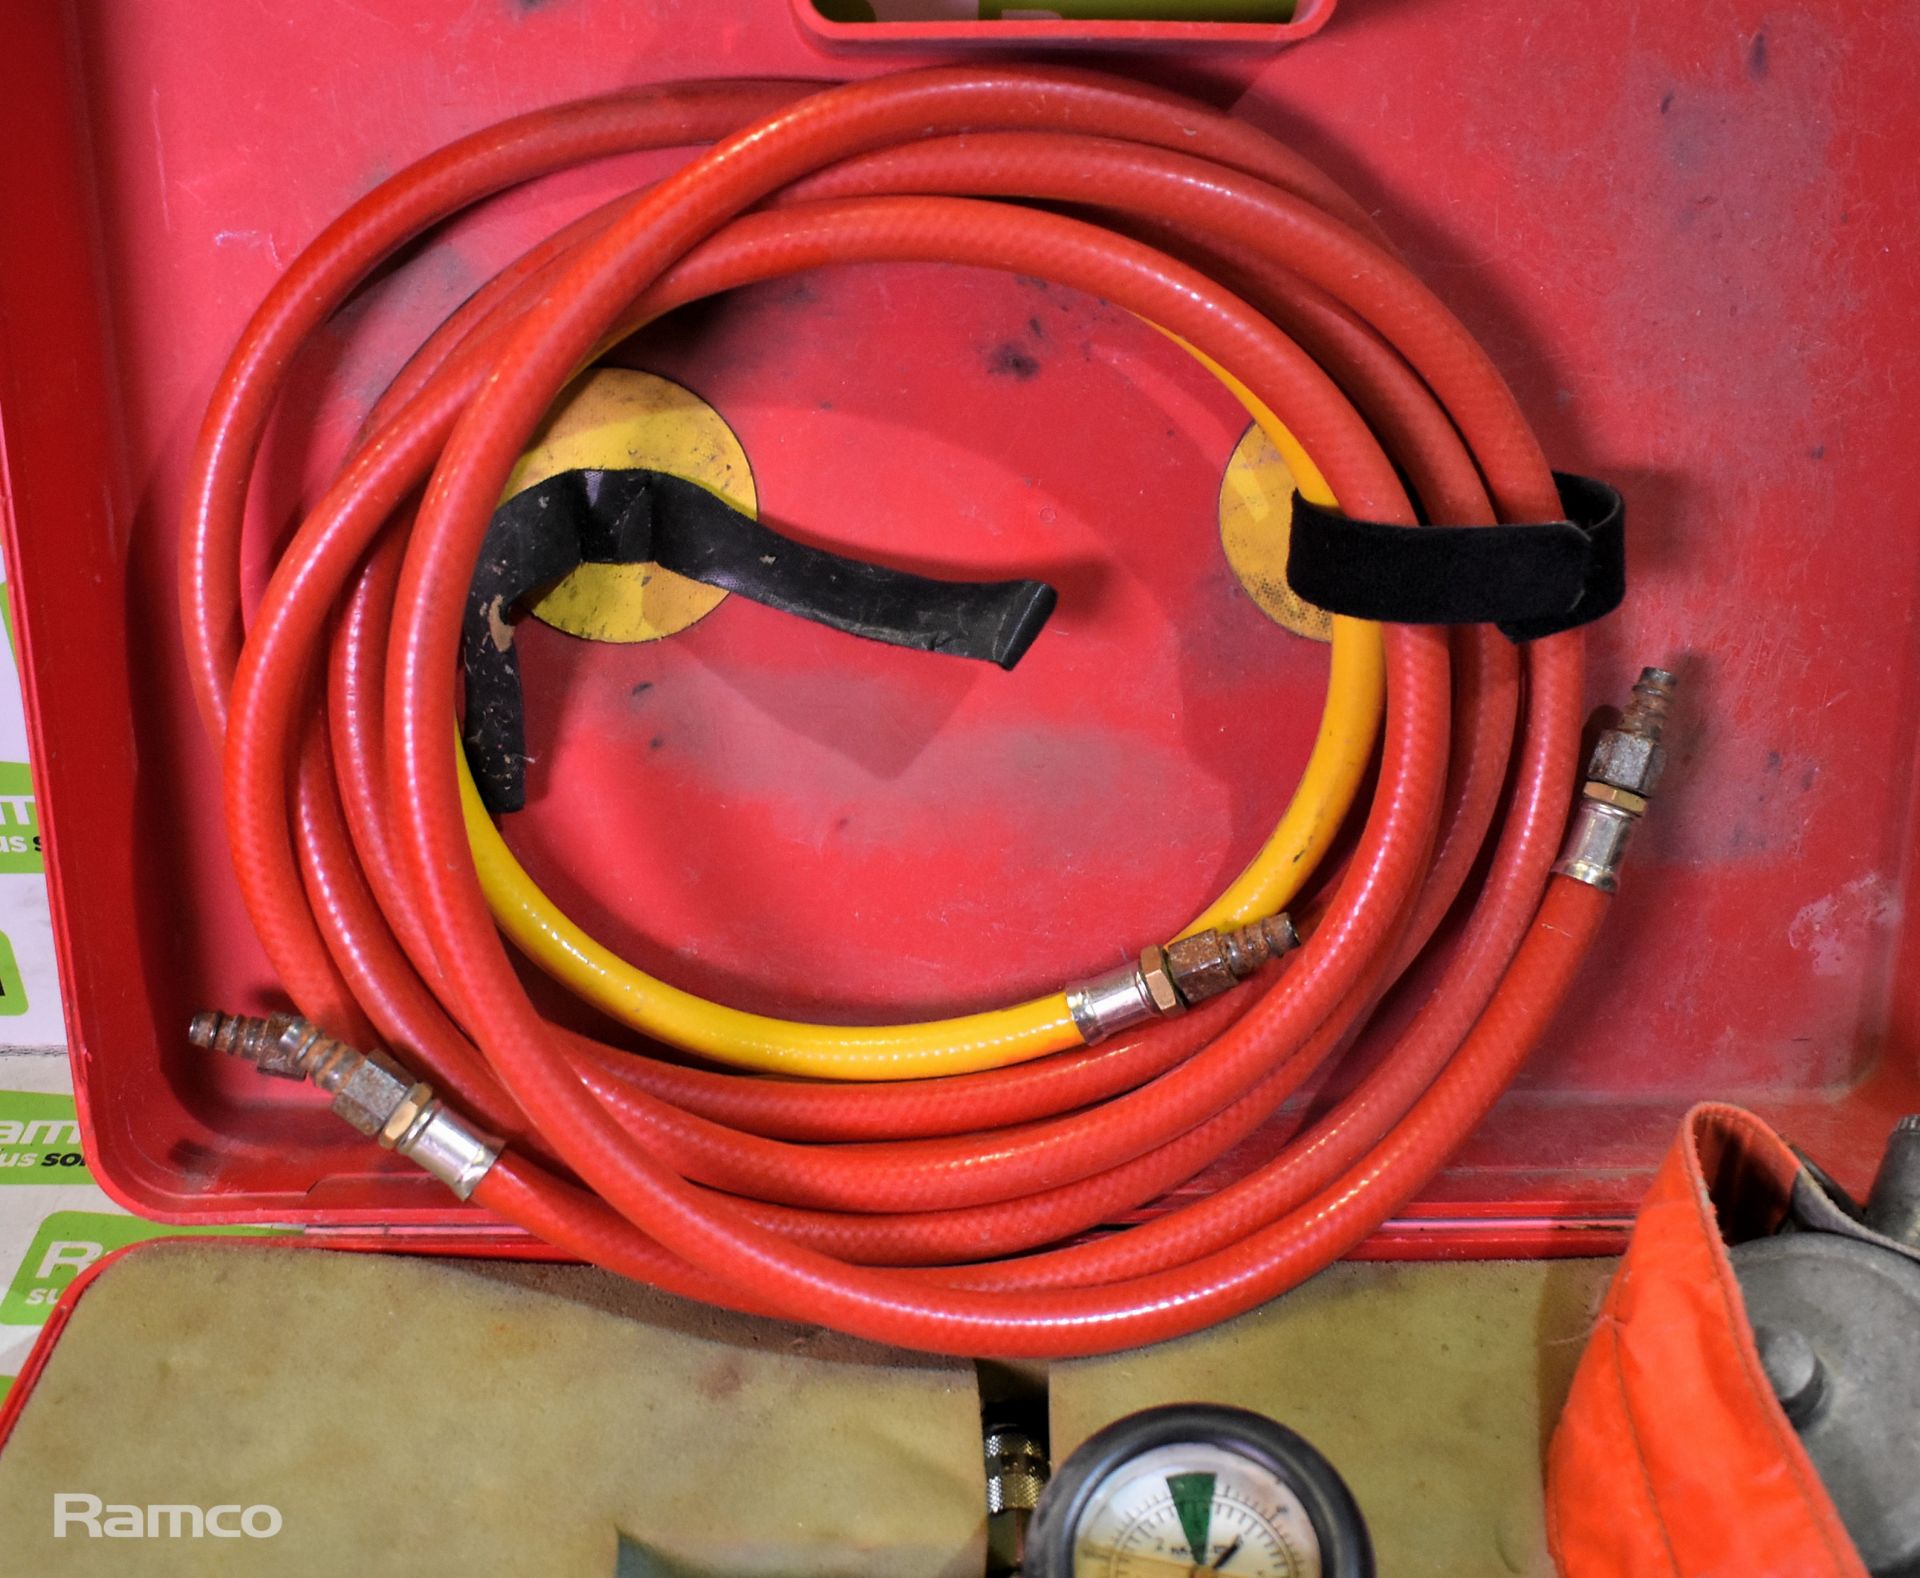 MFC Survival Ltd fire hose inflation kit - Image 6 of 7